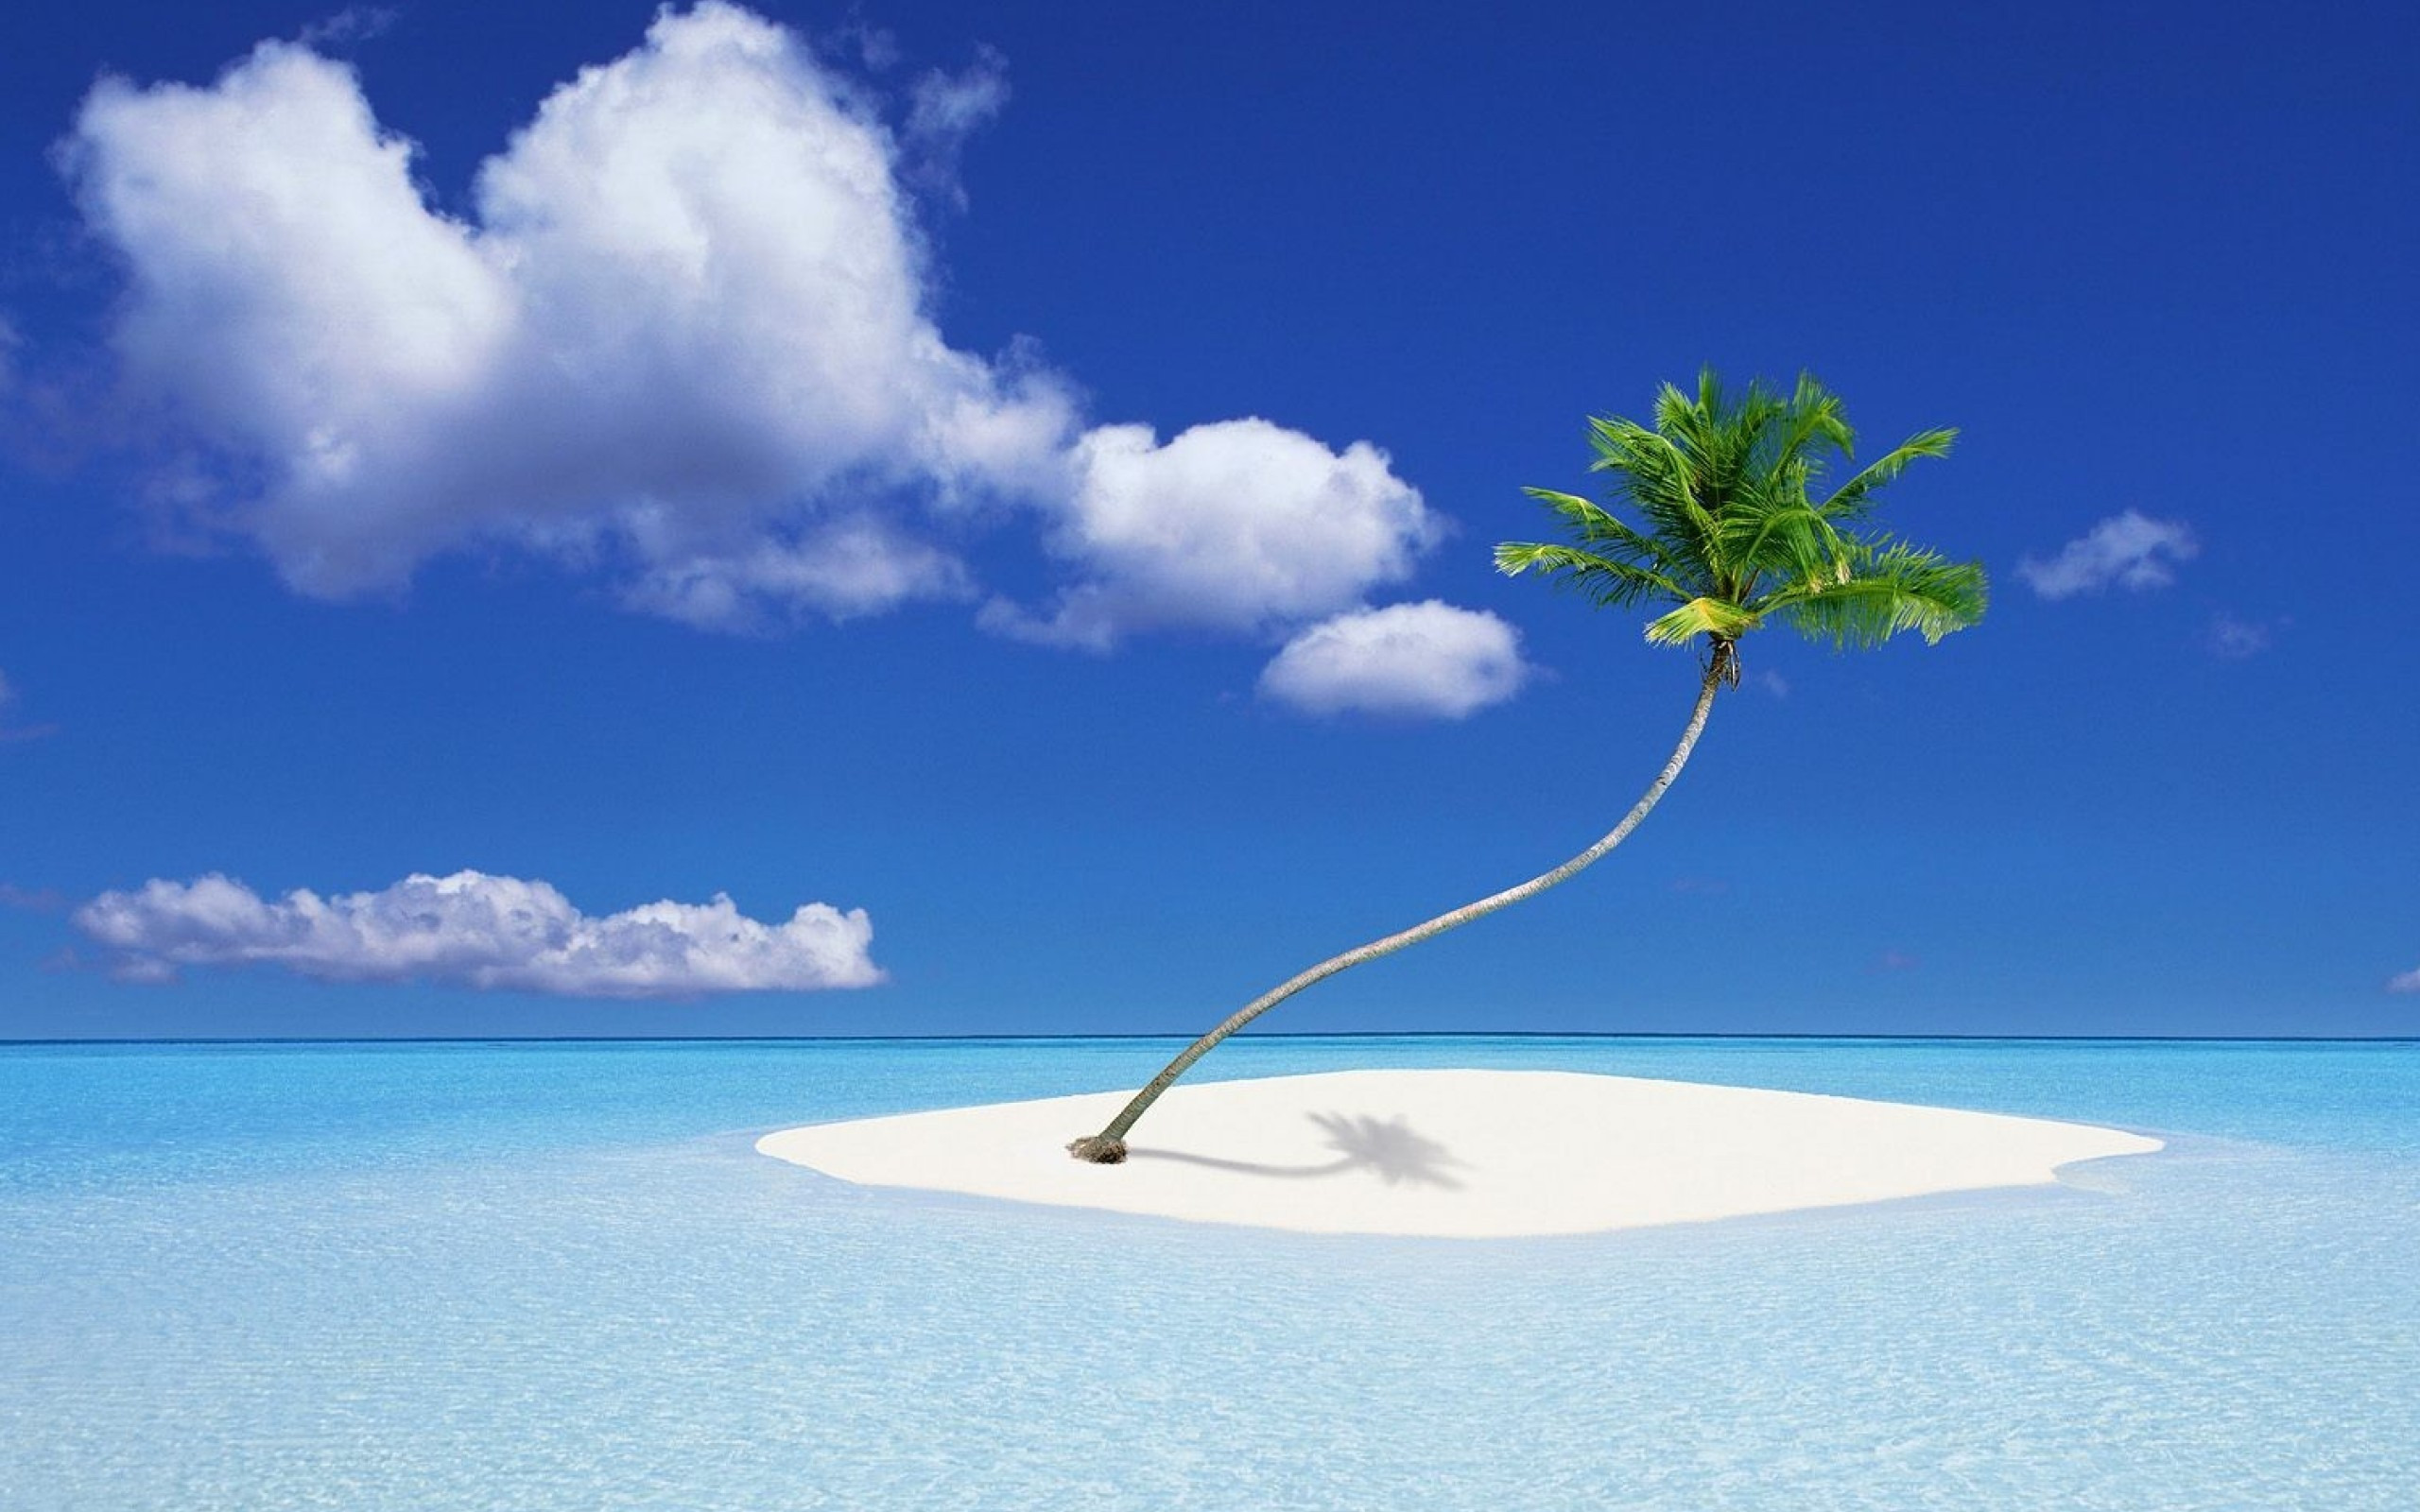 Островок. Остров Пальма. Острова с пальмами и белым песком. Пальма Баунти. Обложка для фейсбука.